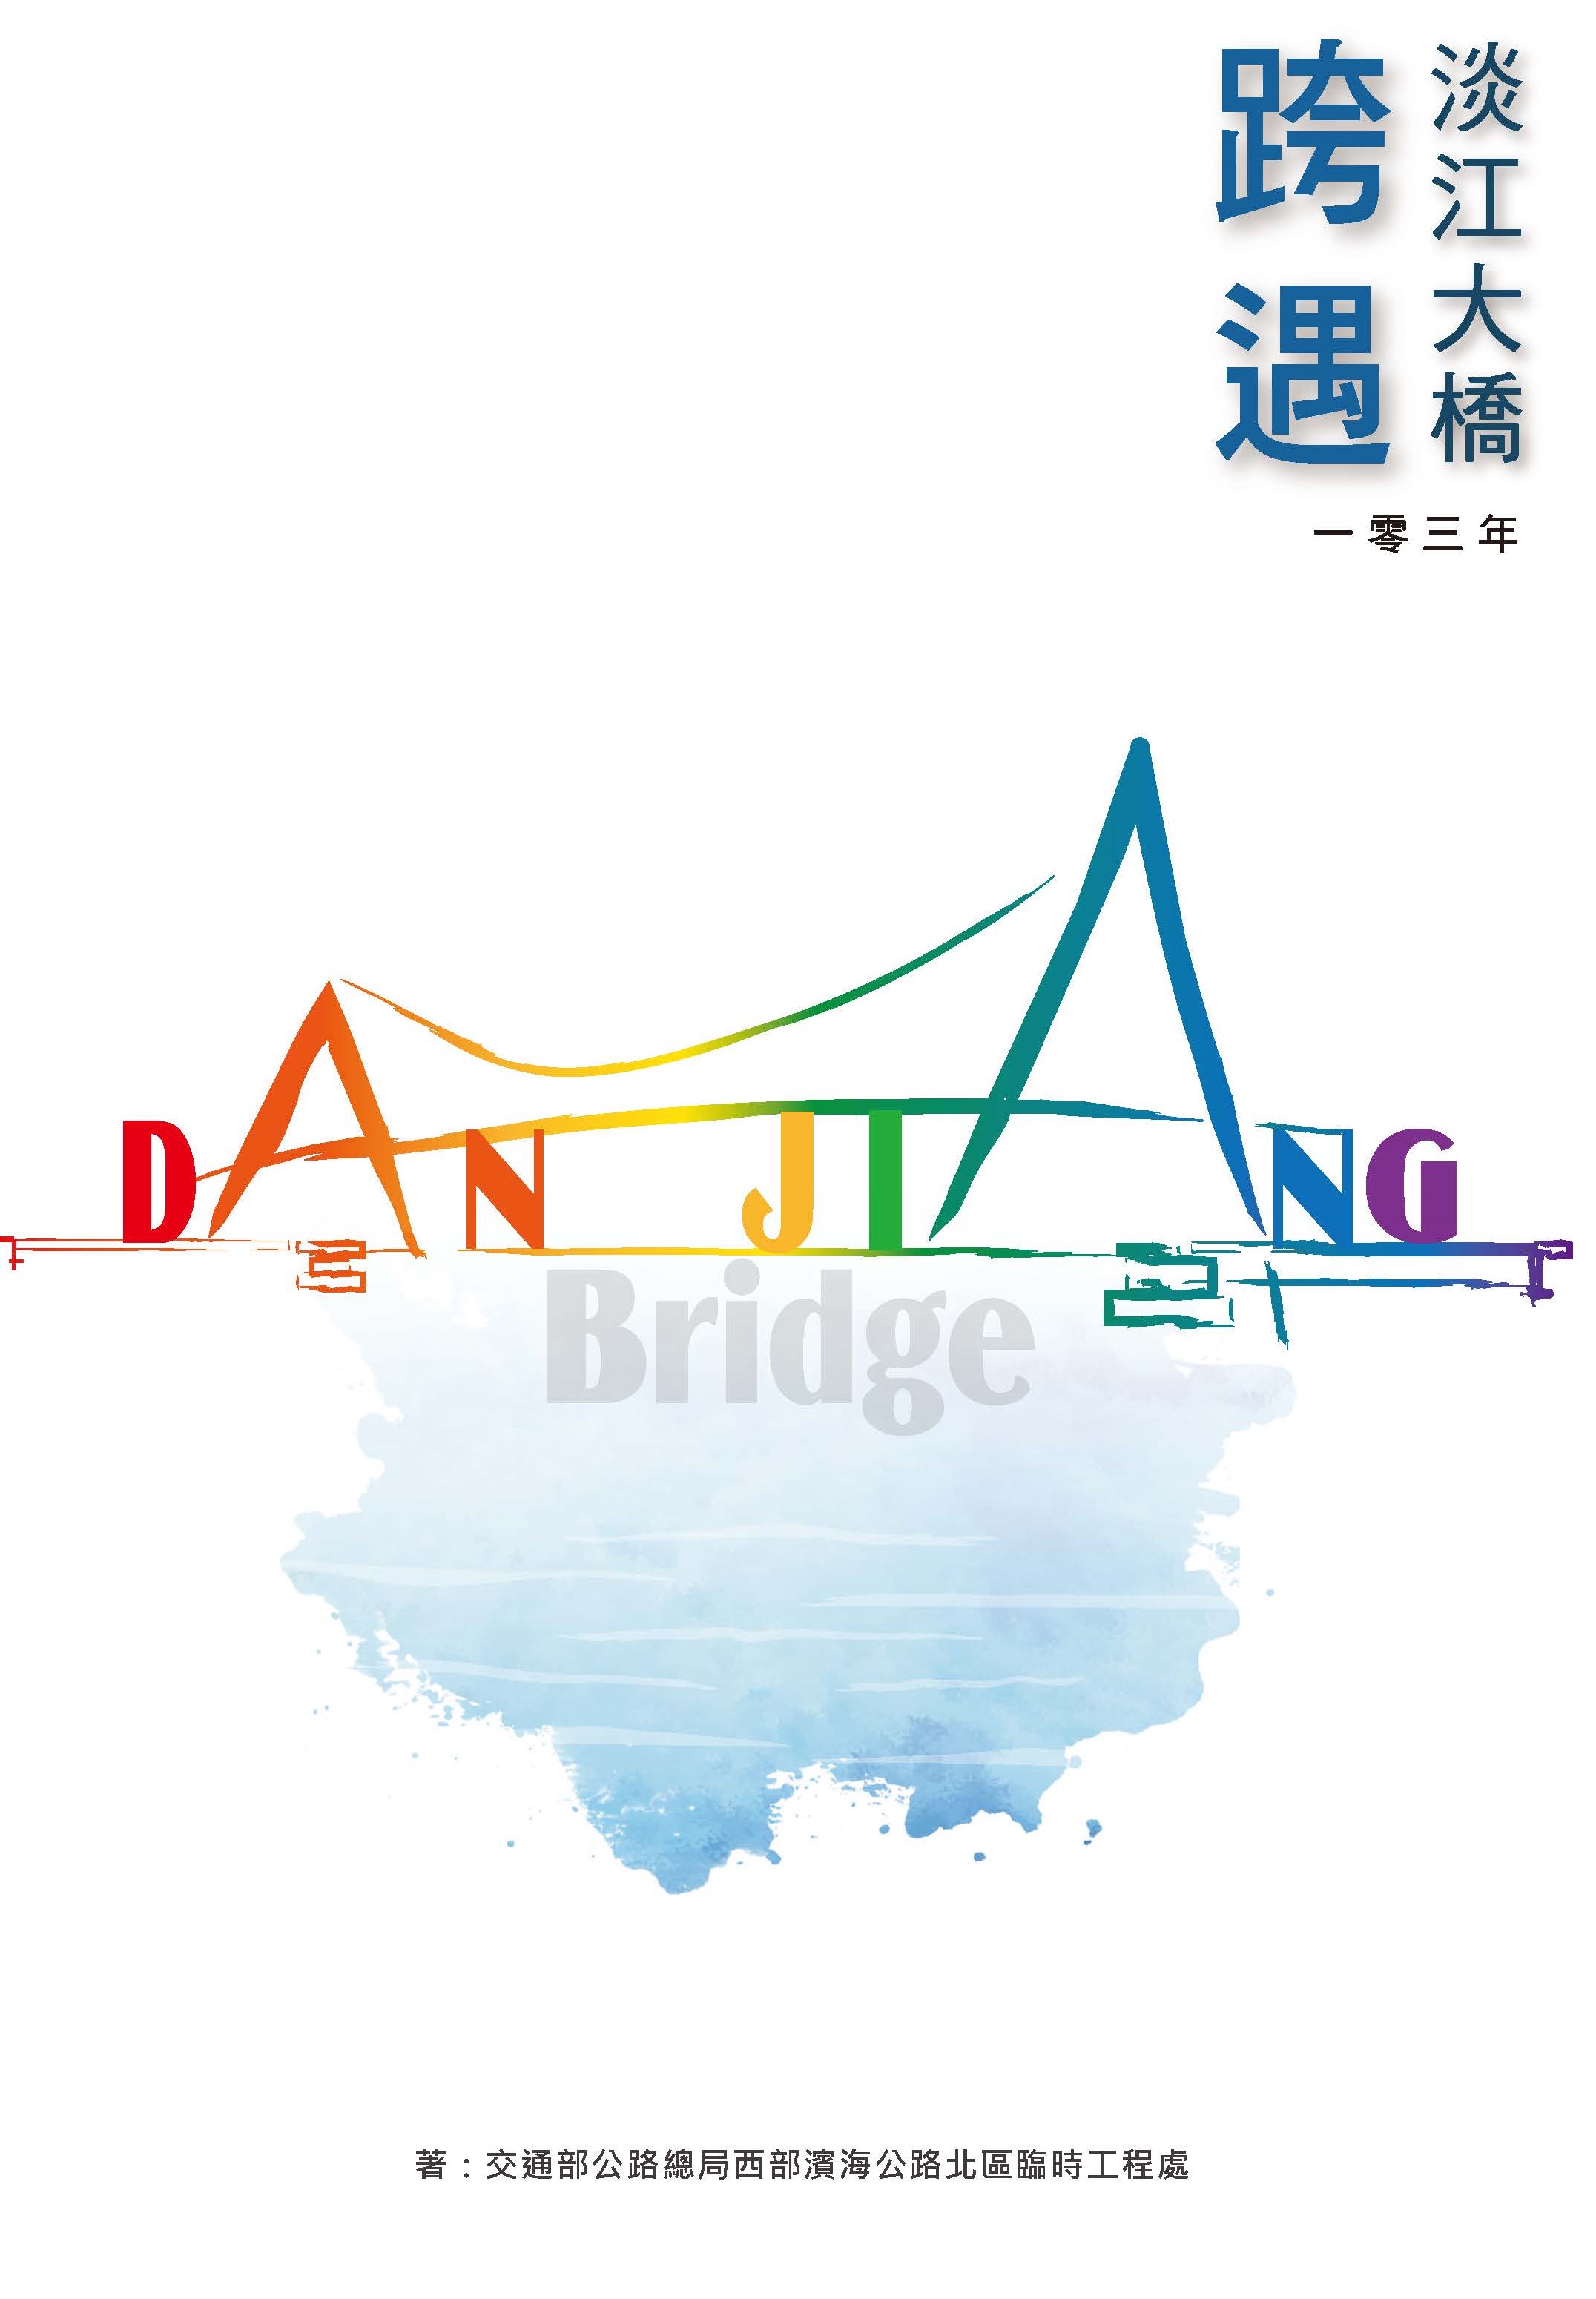 一零三年 淡江大橋 跨遇